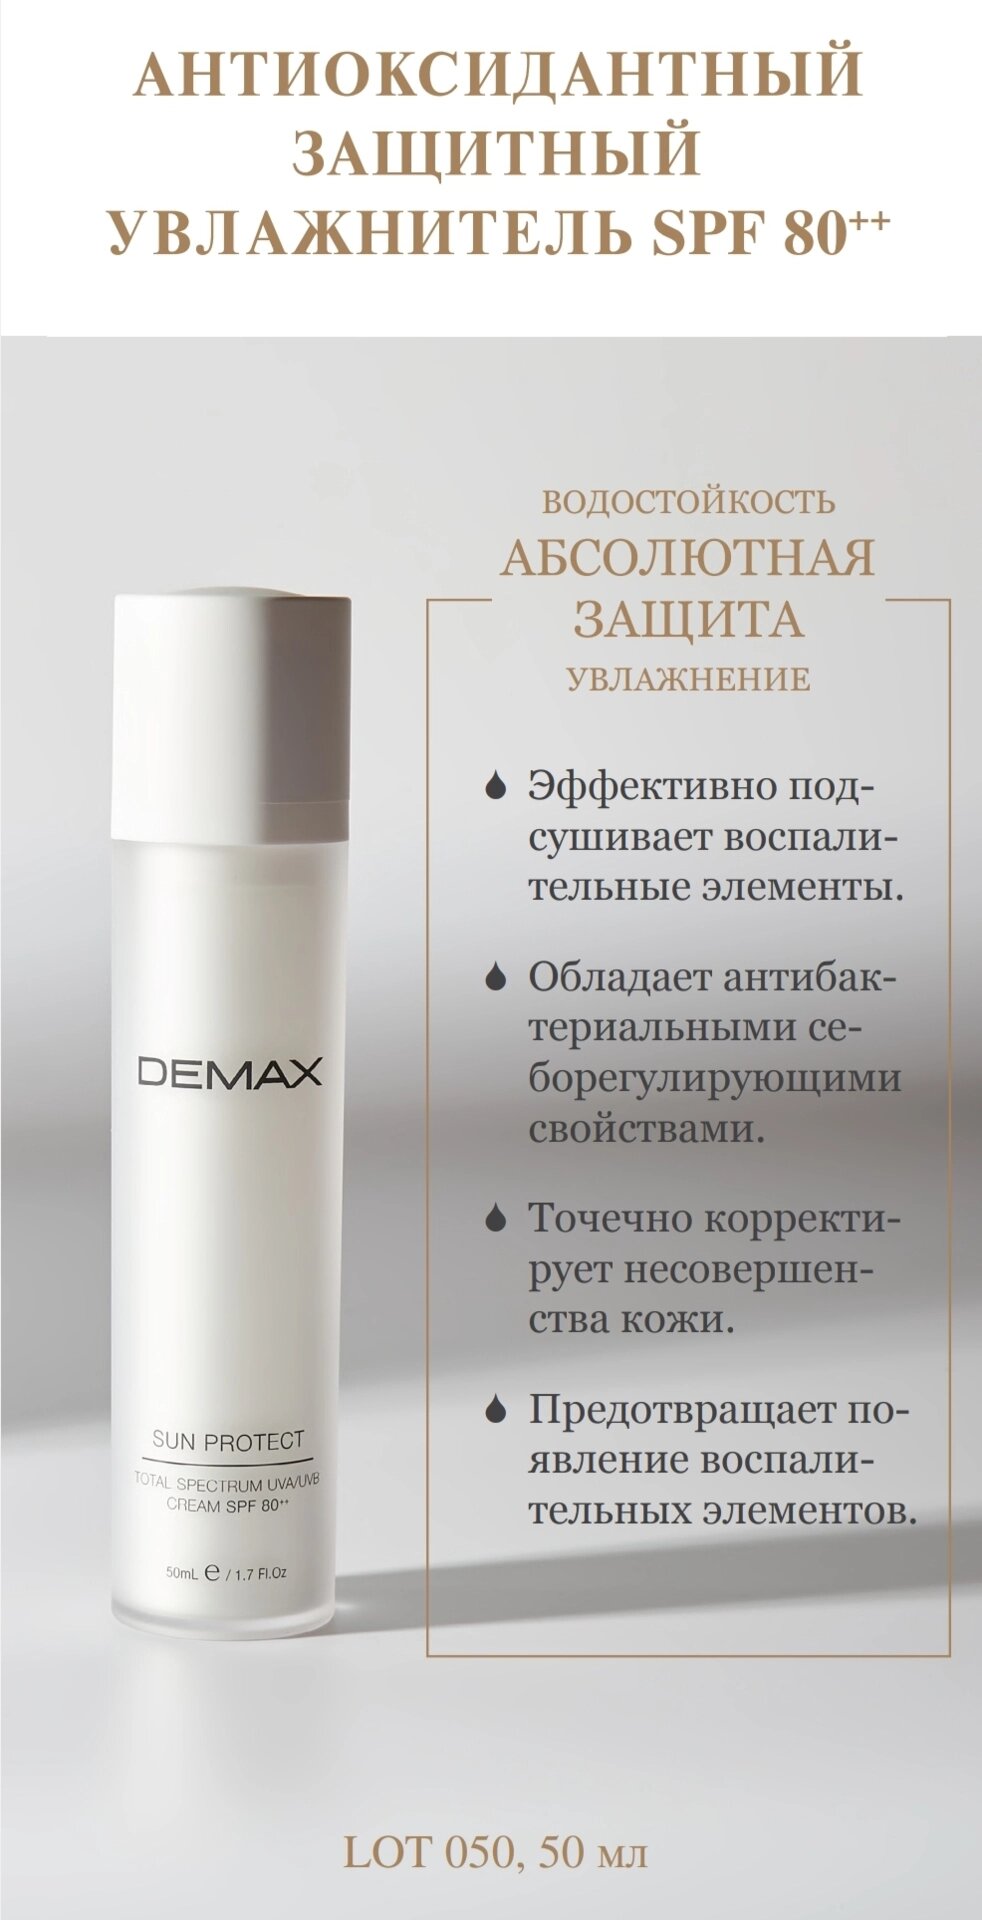 Антиоксидантний захисний зволожувач SPF 80 Demax 50ml sun protect moisturizer cream spf 80+ total spectrum defense від компанії Студія тіла "ARIEL" - фото 1